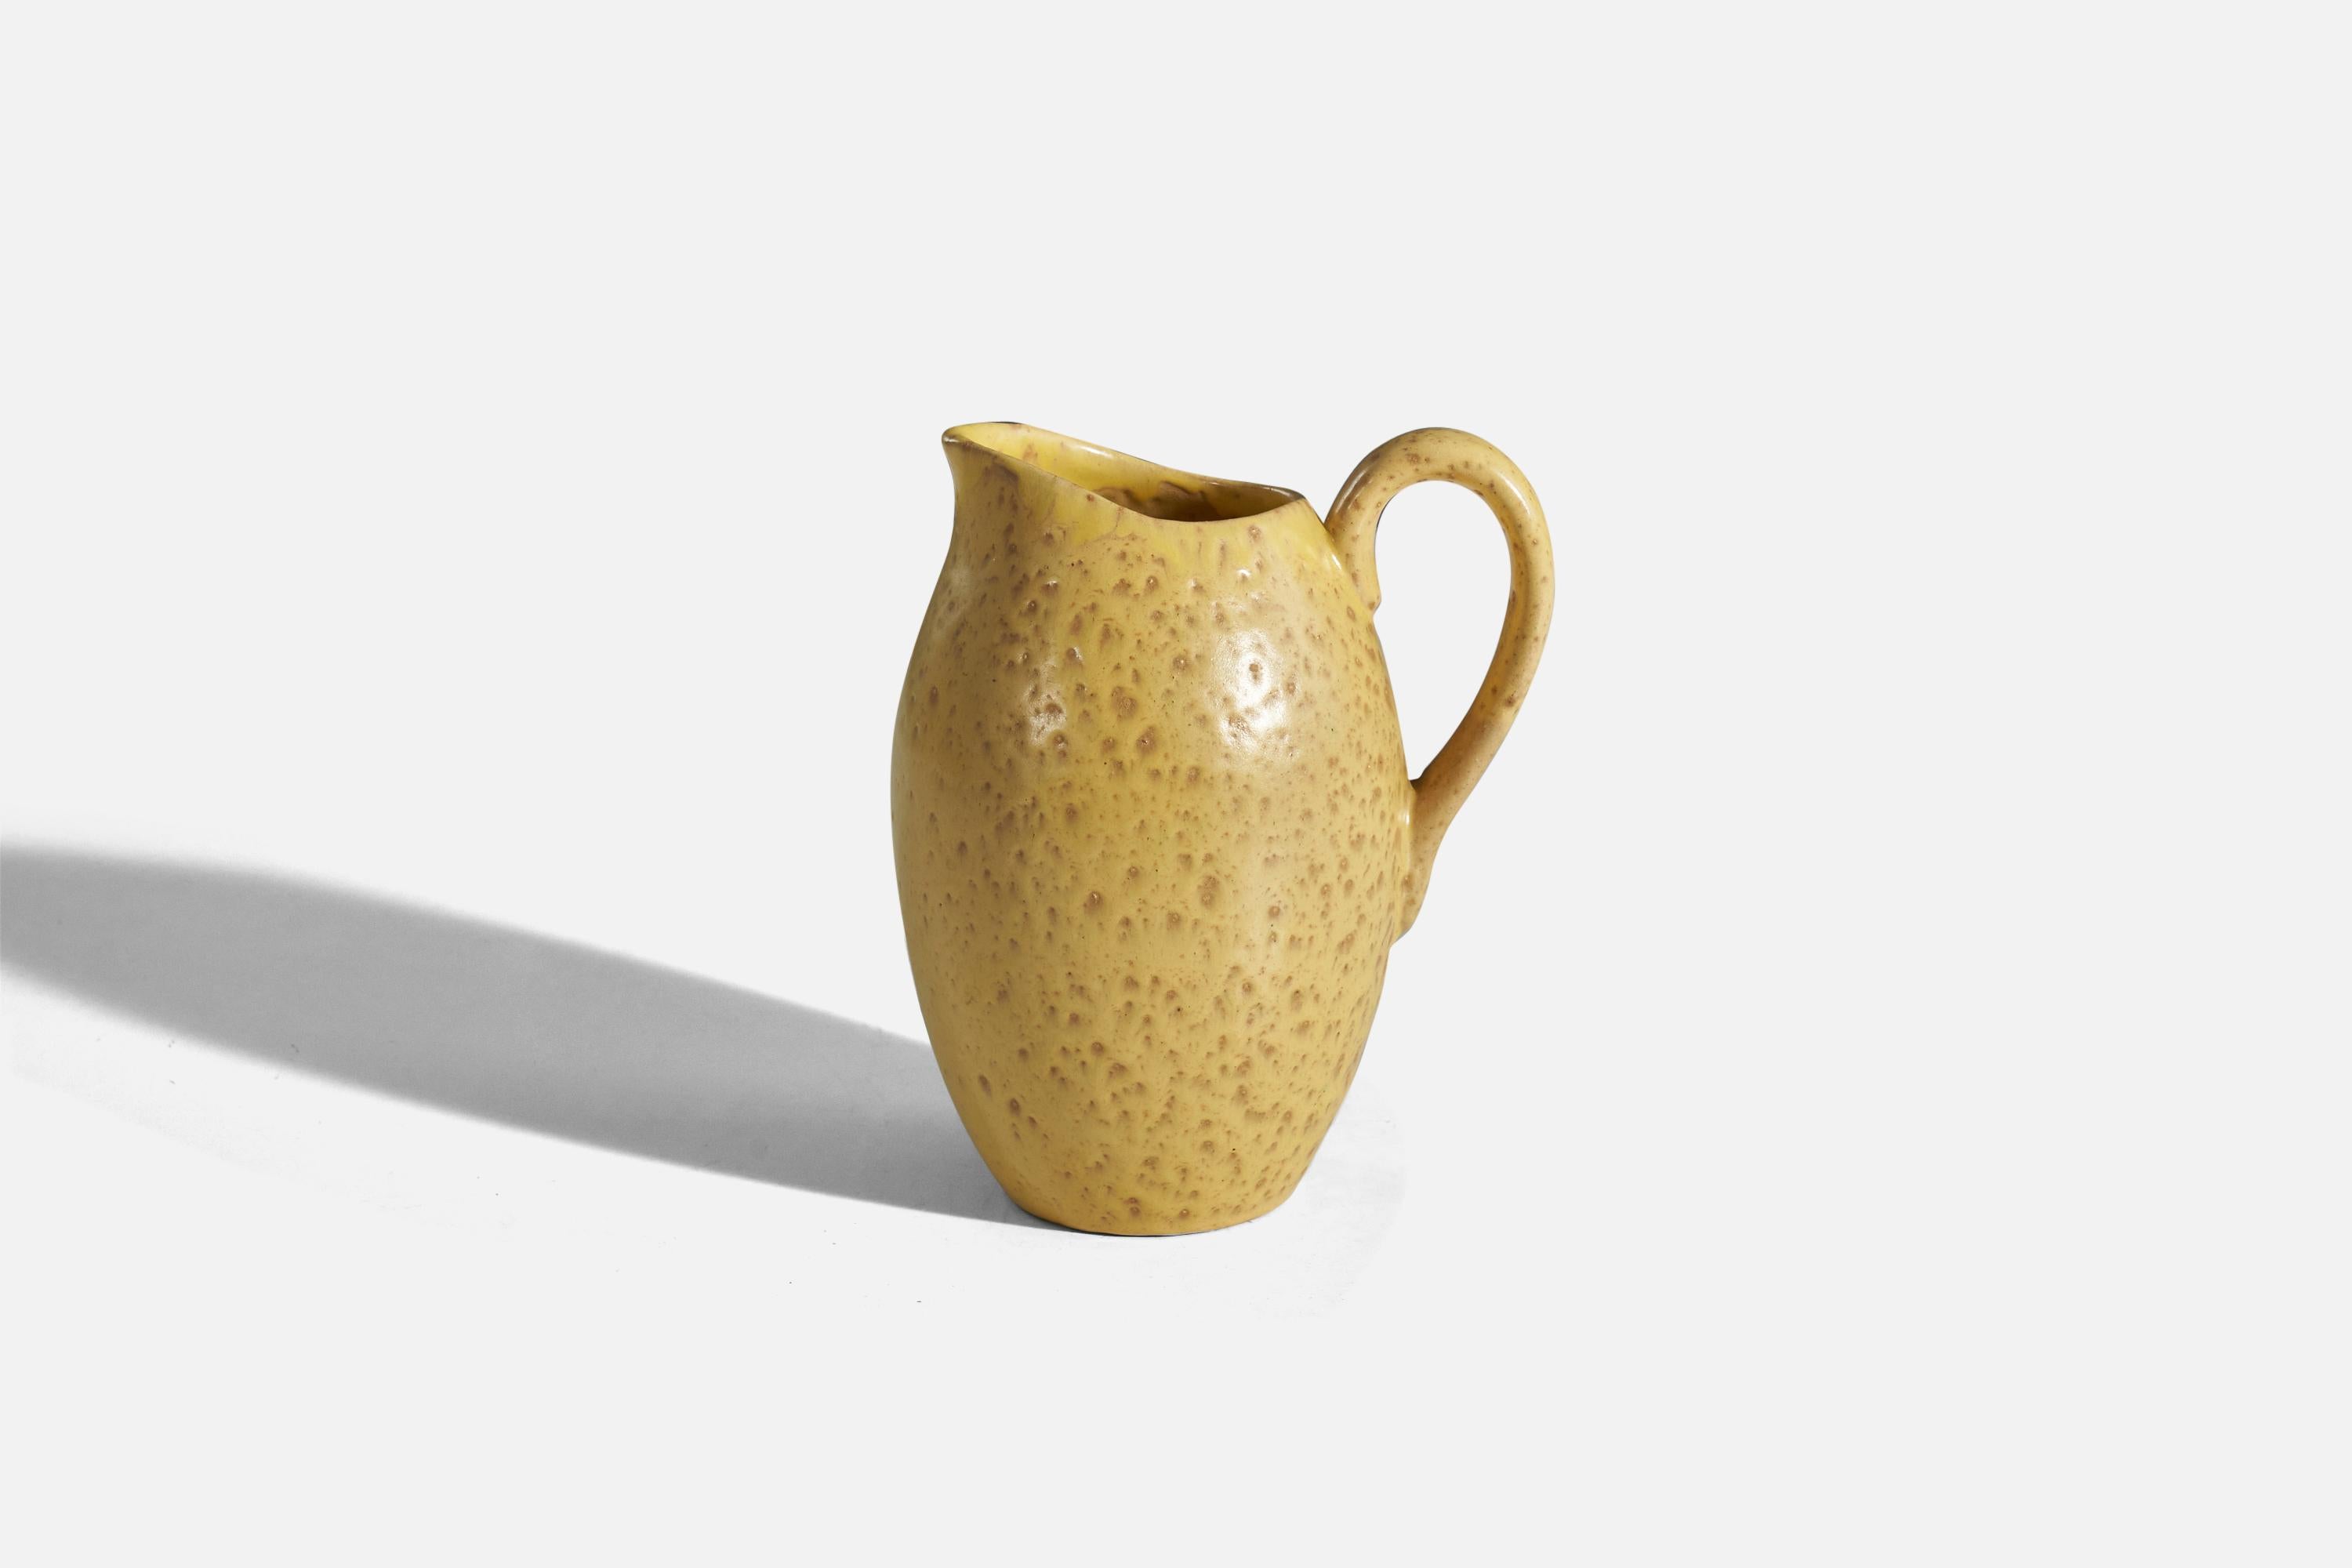 Gelbe, glasierte Vase oder Krug aus Steingut, entworfen und hergestellt von Nittsjö, Schweden, 1940er Jahre.
 